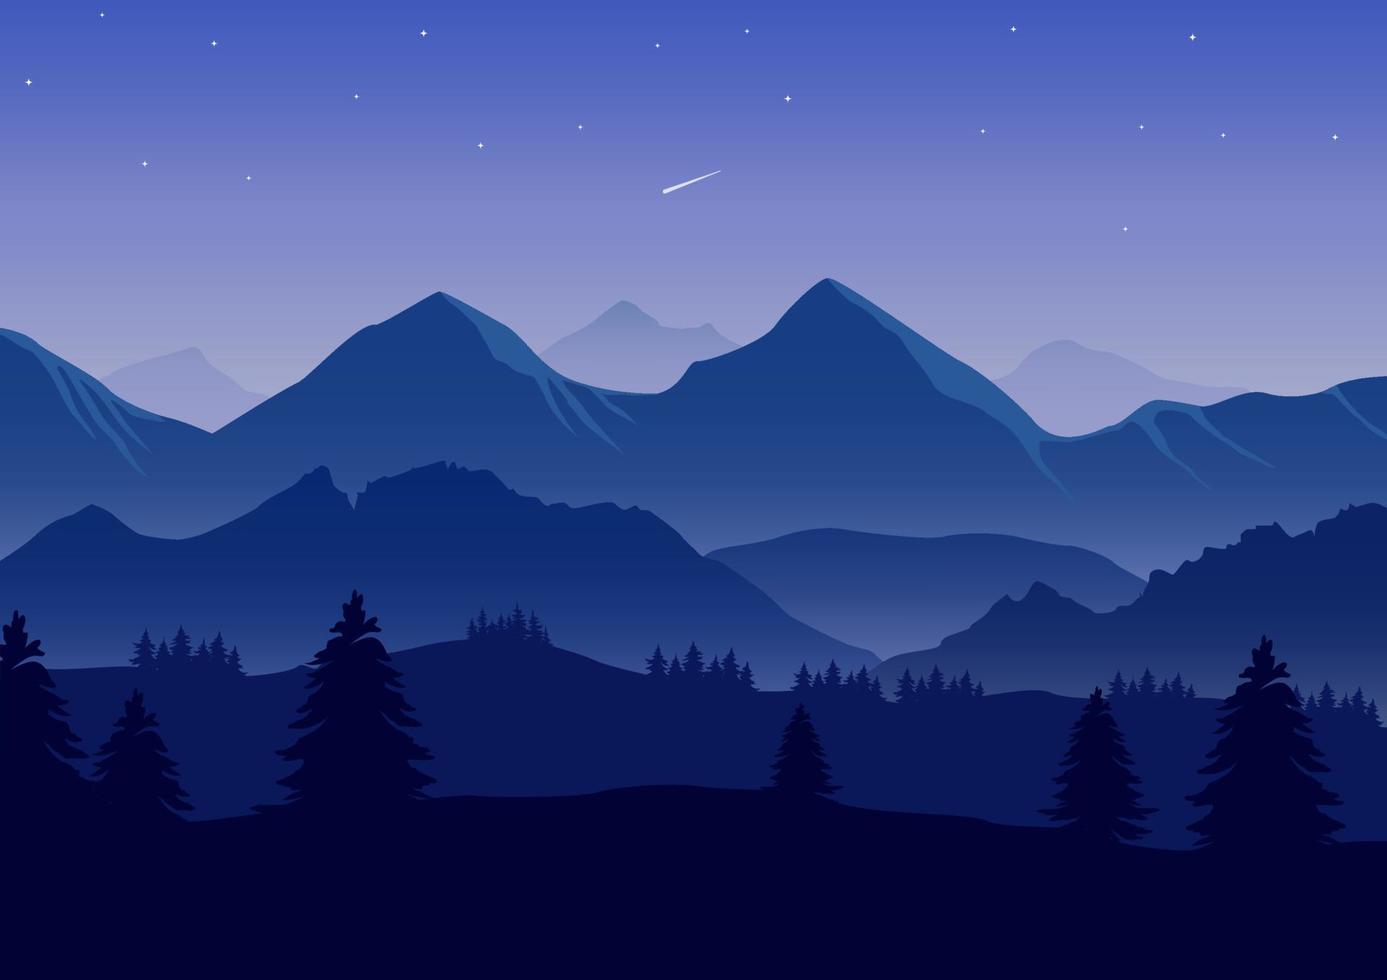 realistisch bergen landschap vector illustratie. pijnboom bomen en bergen' blauw silhouetten.